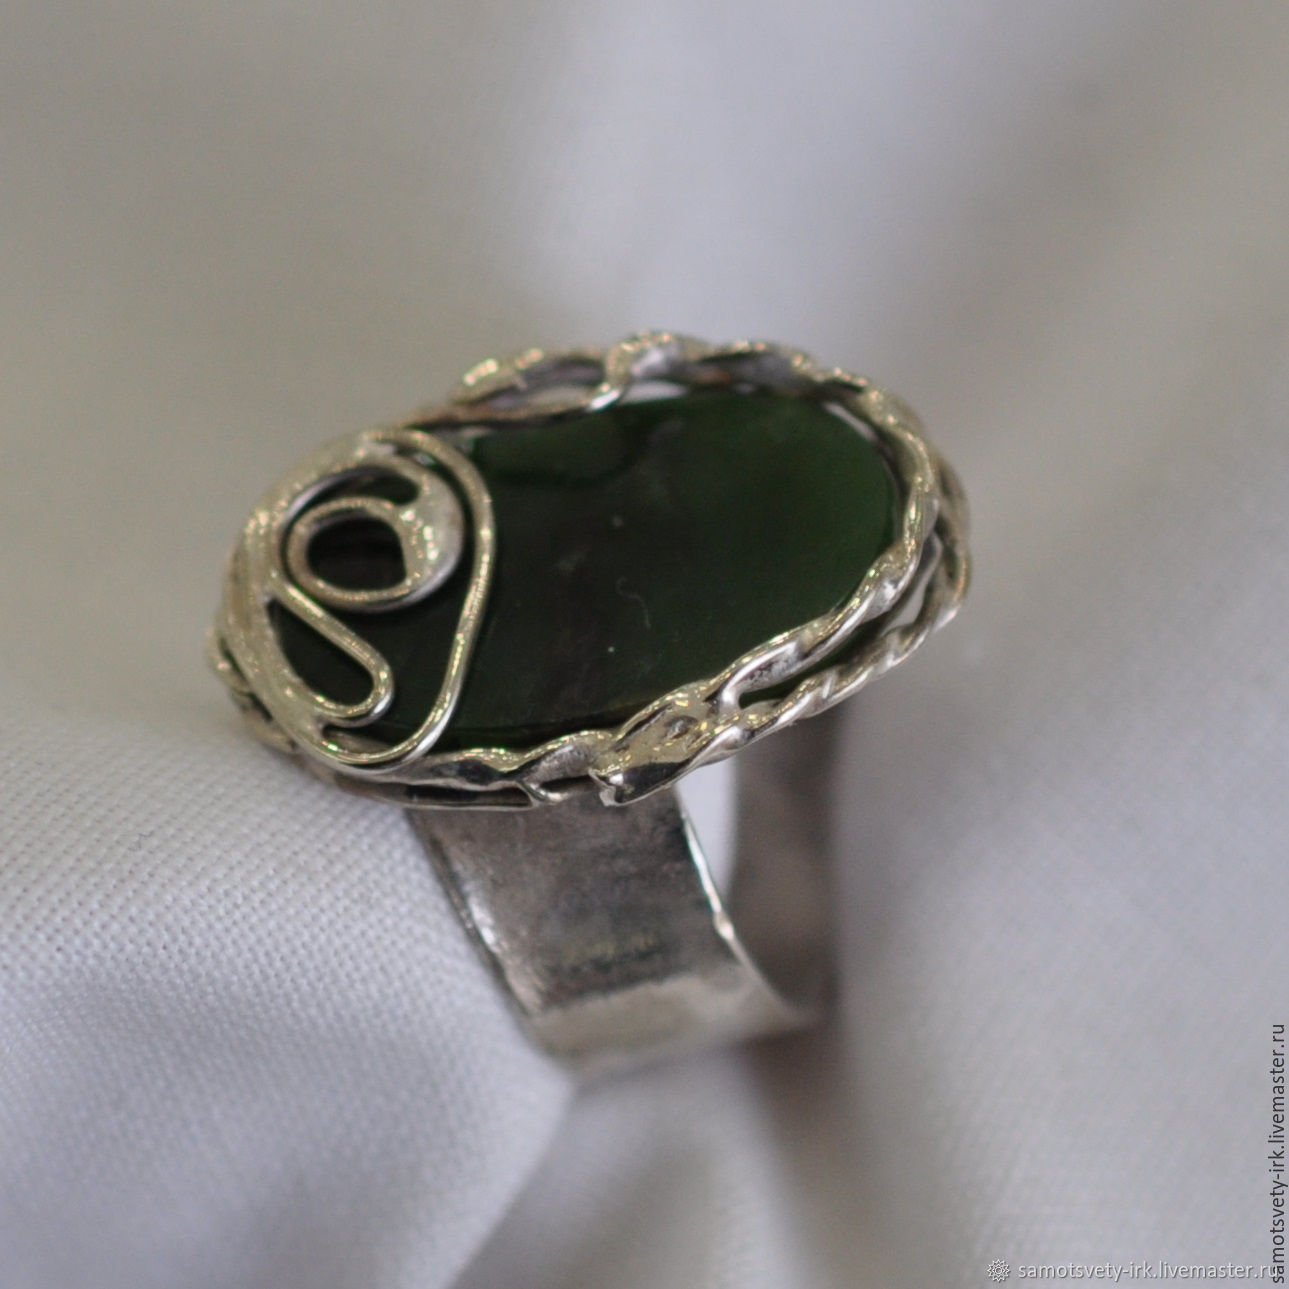 Copyright ring with jade, Rings, Irkutsk,  Фото №1